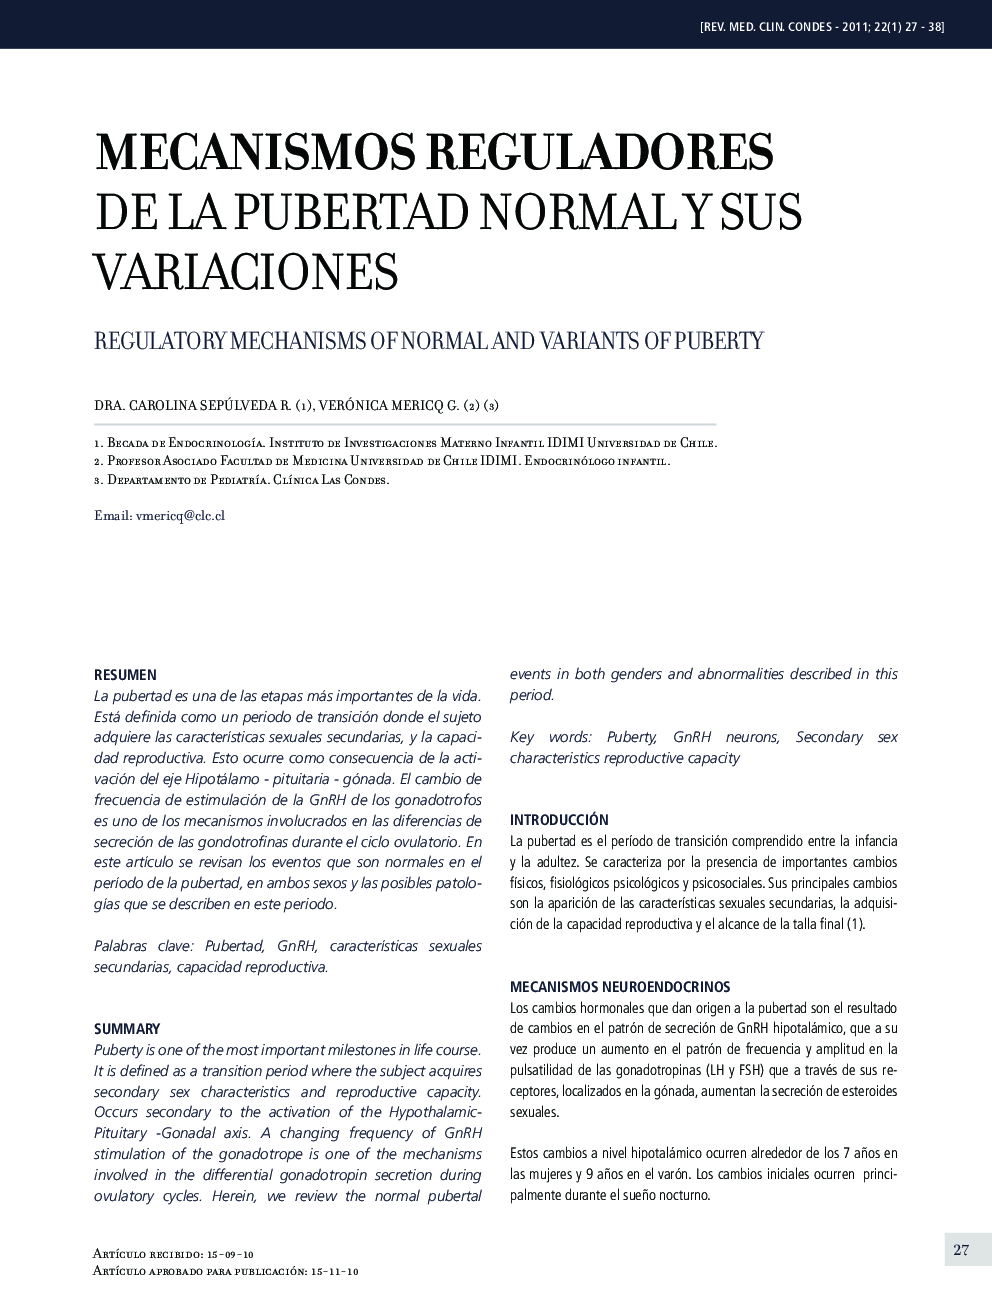 Mecanismos reguladores de la pubertad normal y sus variaciones